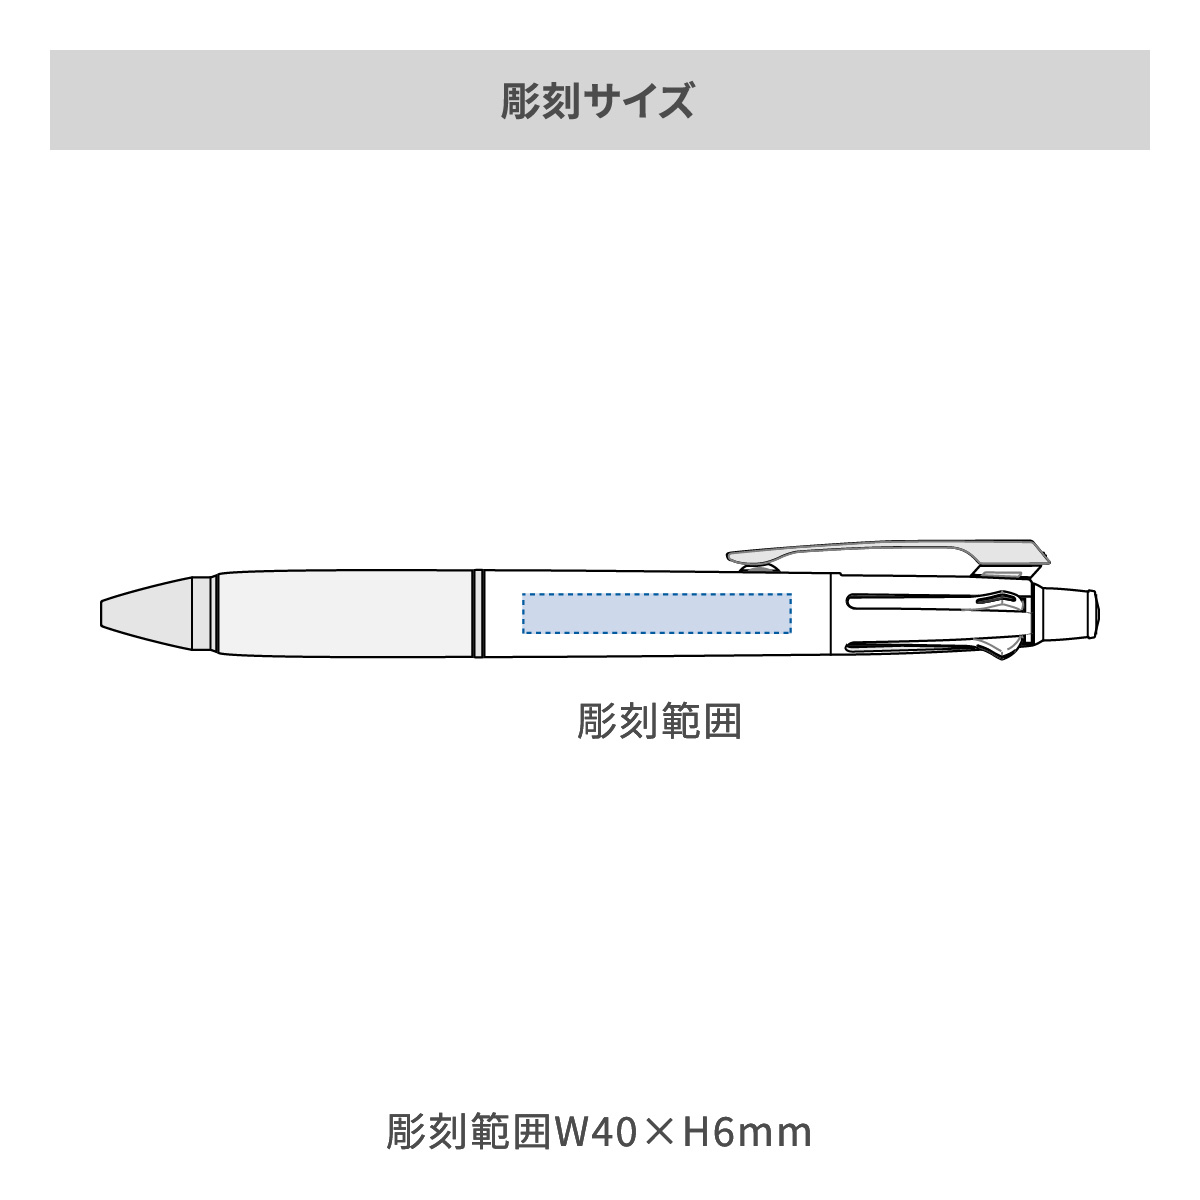 【短納期】三菱鉛筆 ジェットストリーム 多機能ペン 4&1 0.7mmの名入れ範囲